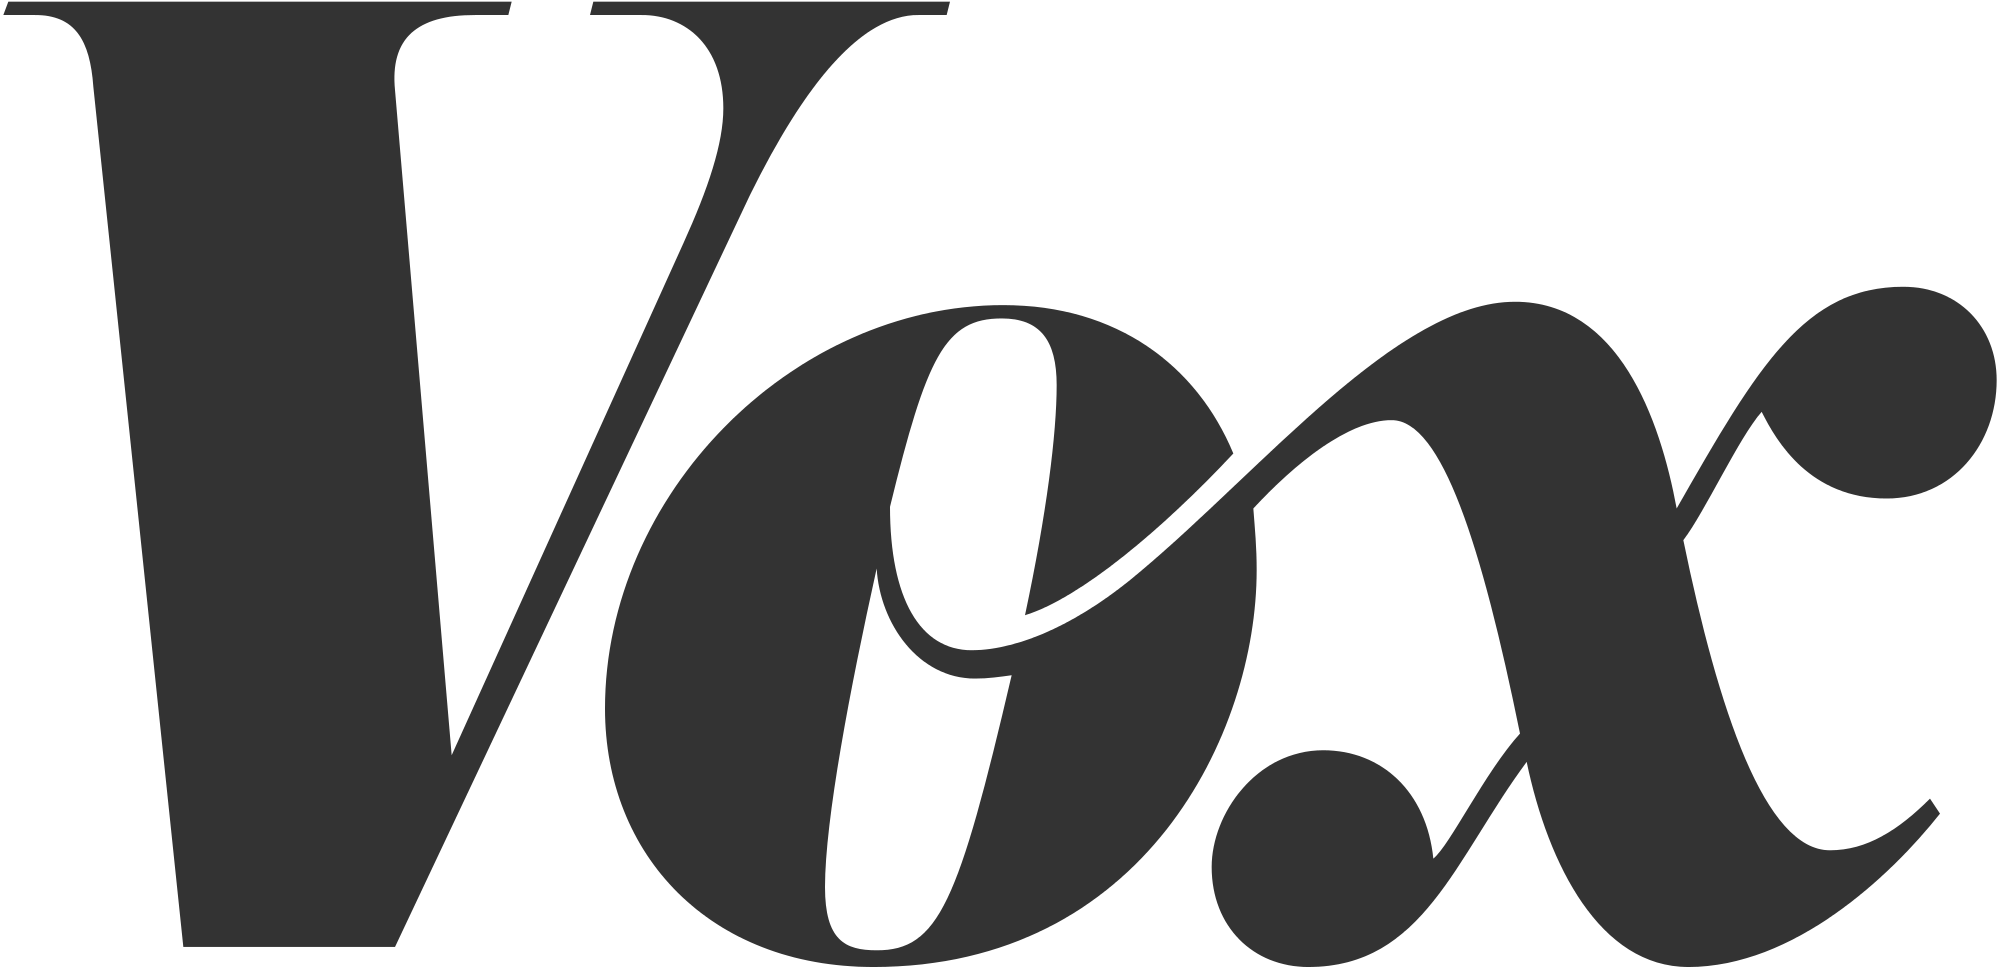 typografi - Hvilken skrifttypekategori er Vox-logoet? - Grafisk design ...